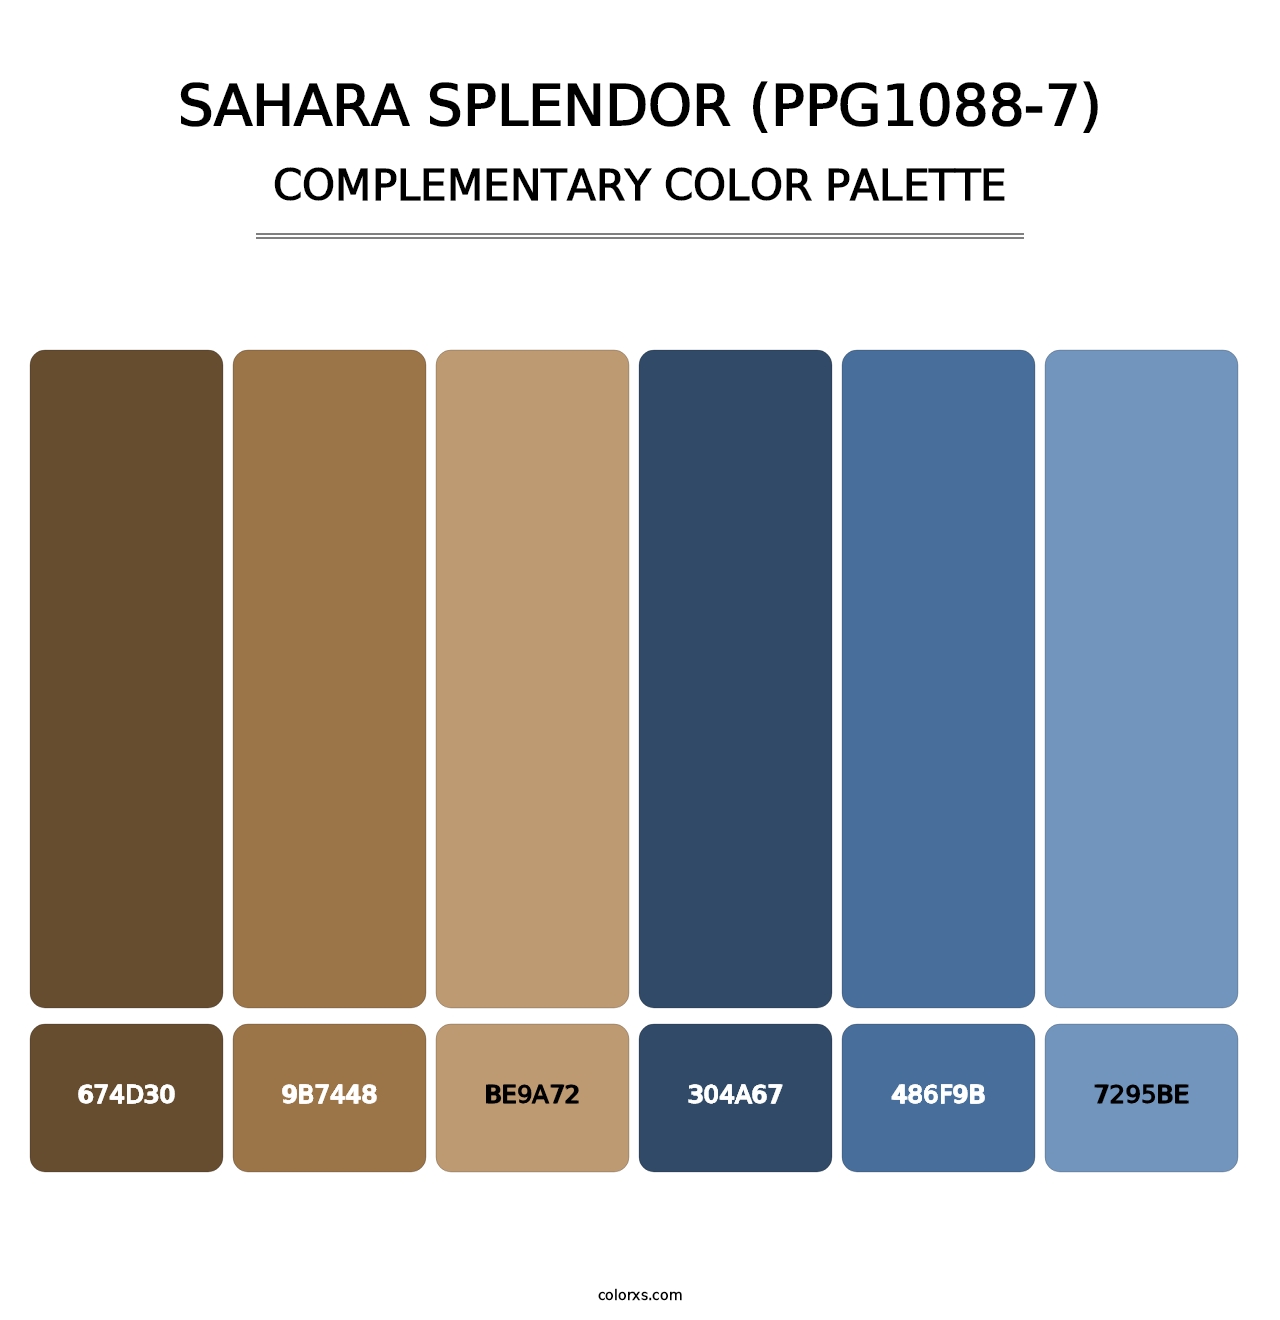 Sahara Splendor (PPG1088-7) - Complementary Color Palette